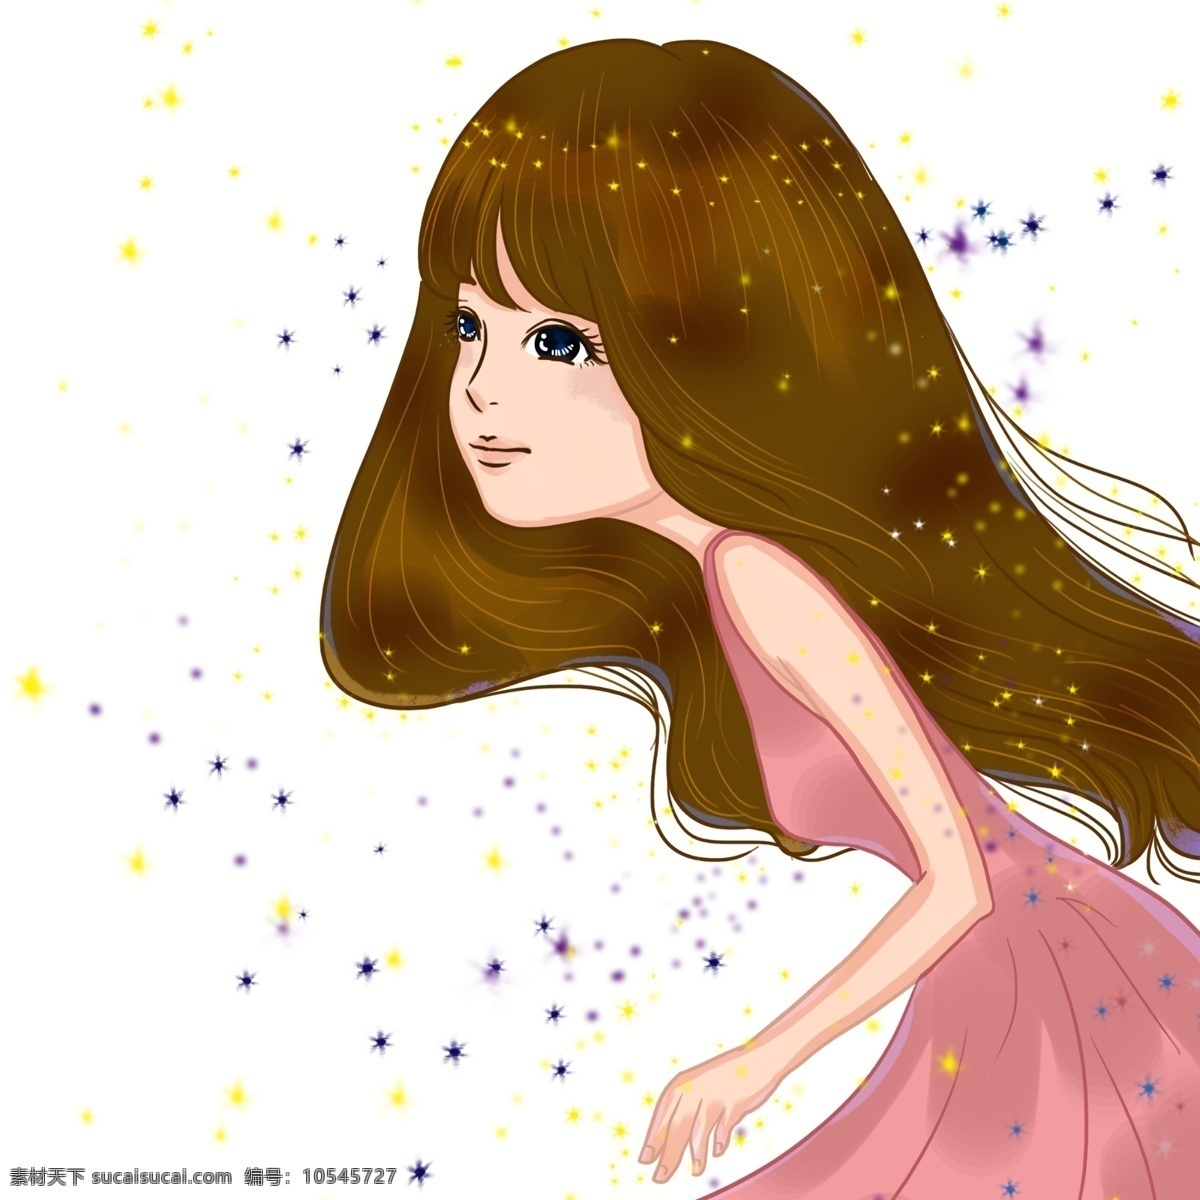 漫画 少女 卡通 人物 星空中的女孩 为梦追逐 粉色裙子 漫天星星 亮晶晶 长发飘飘